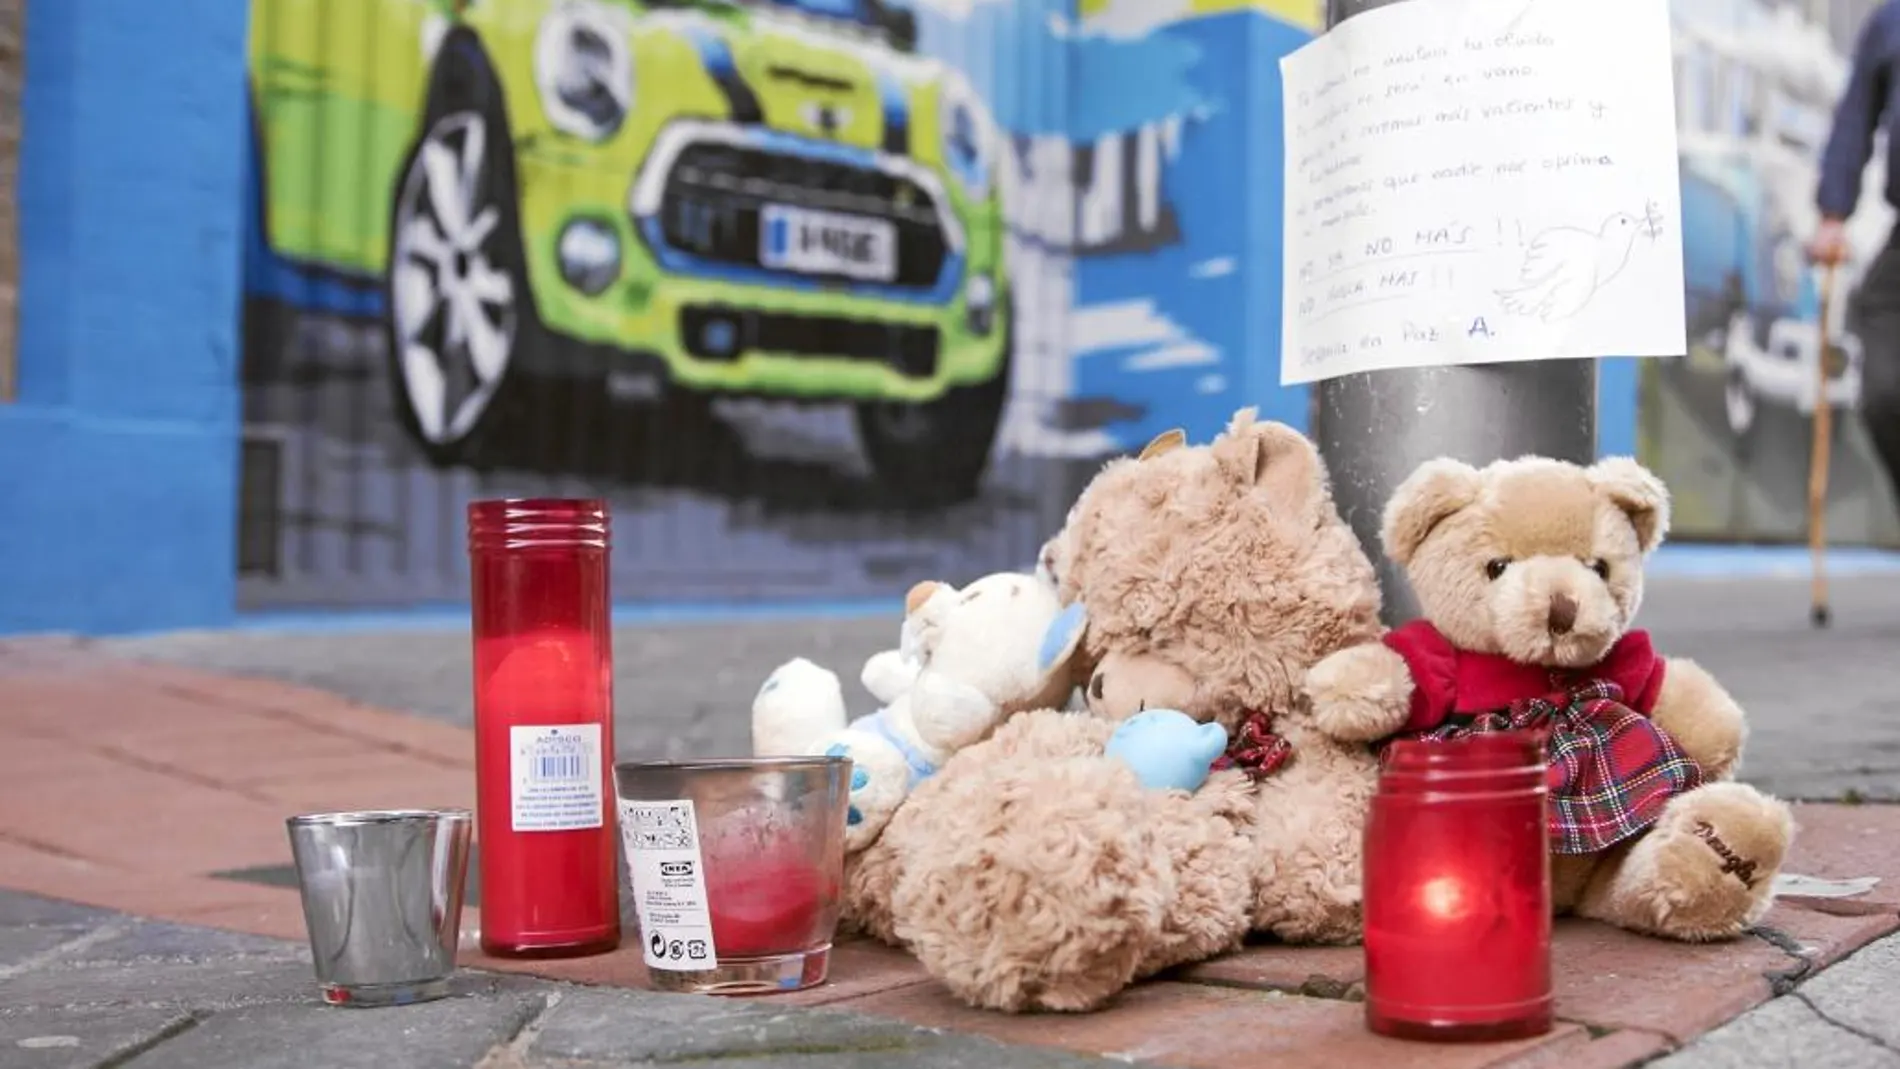 Los vecinos de Vitoria rindieron así homenaje a la pequeña asesinada en su ciudad el pasado lunes